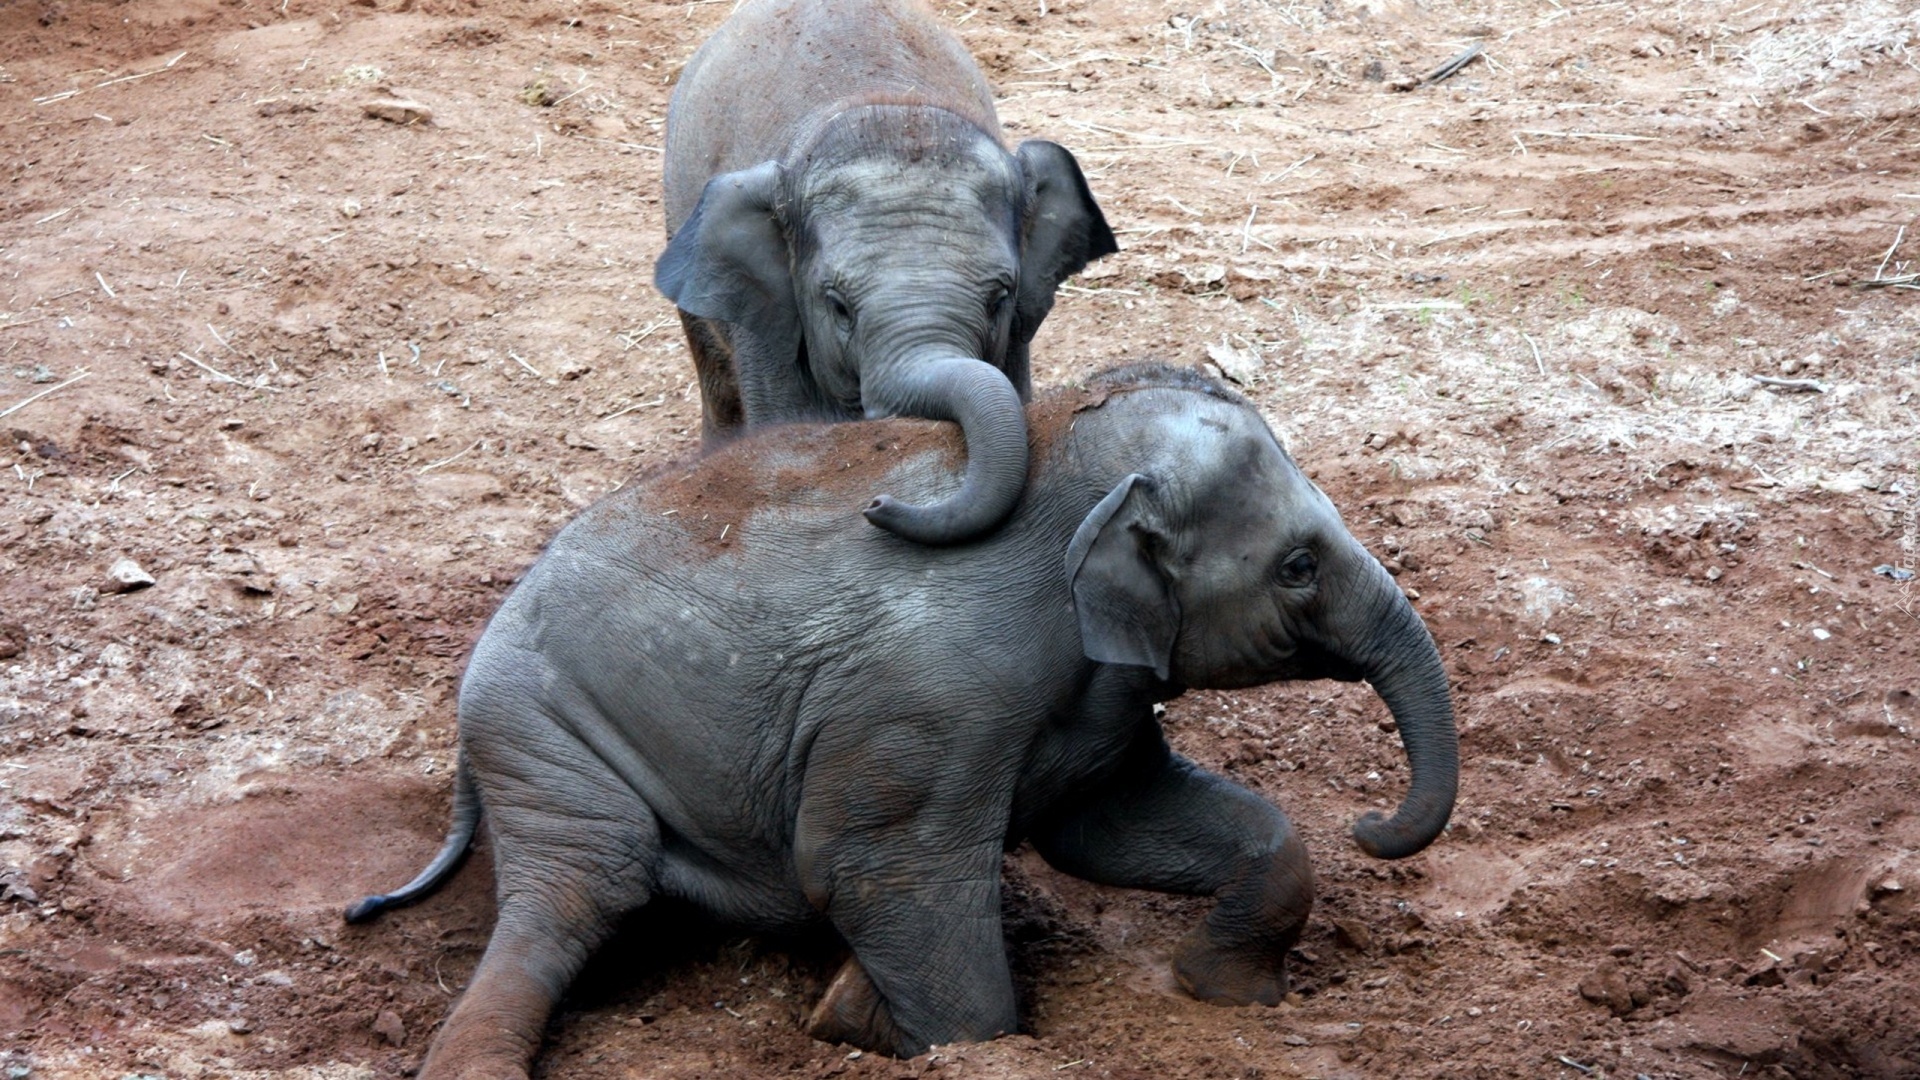 Dwa, Małe, Słonie